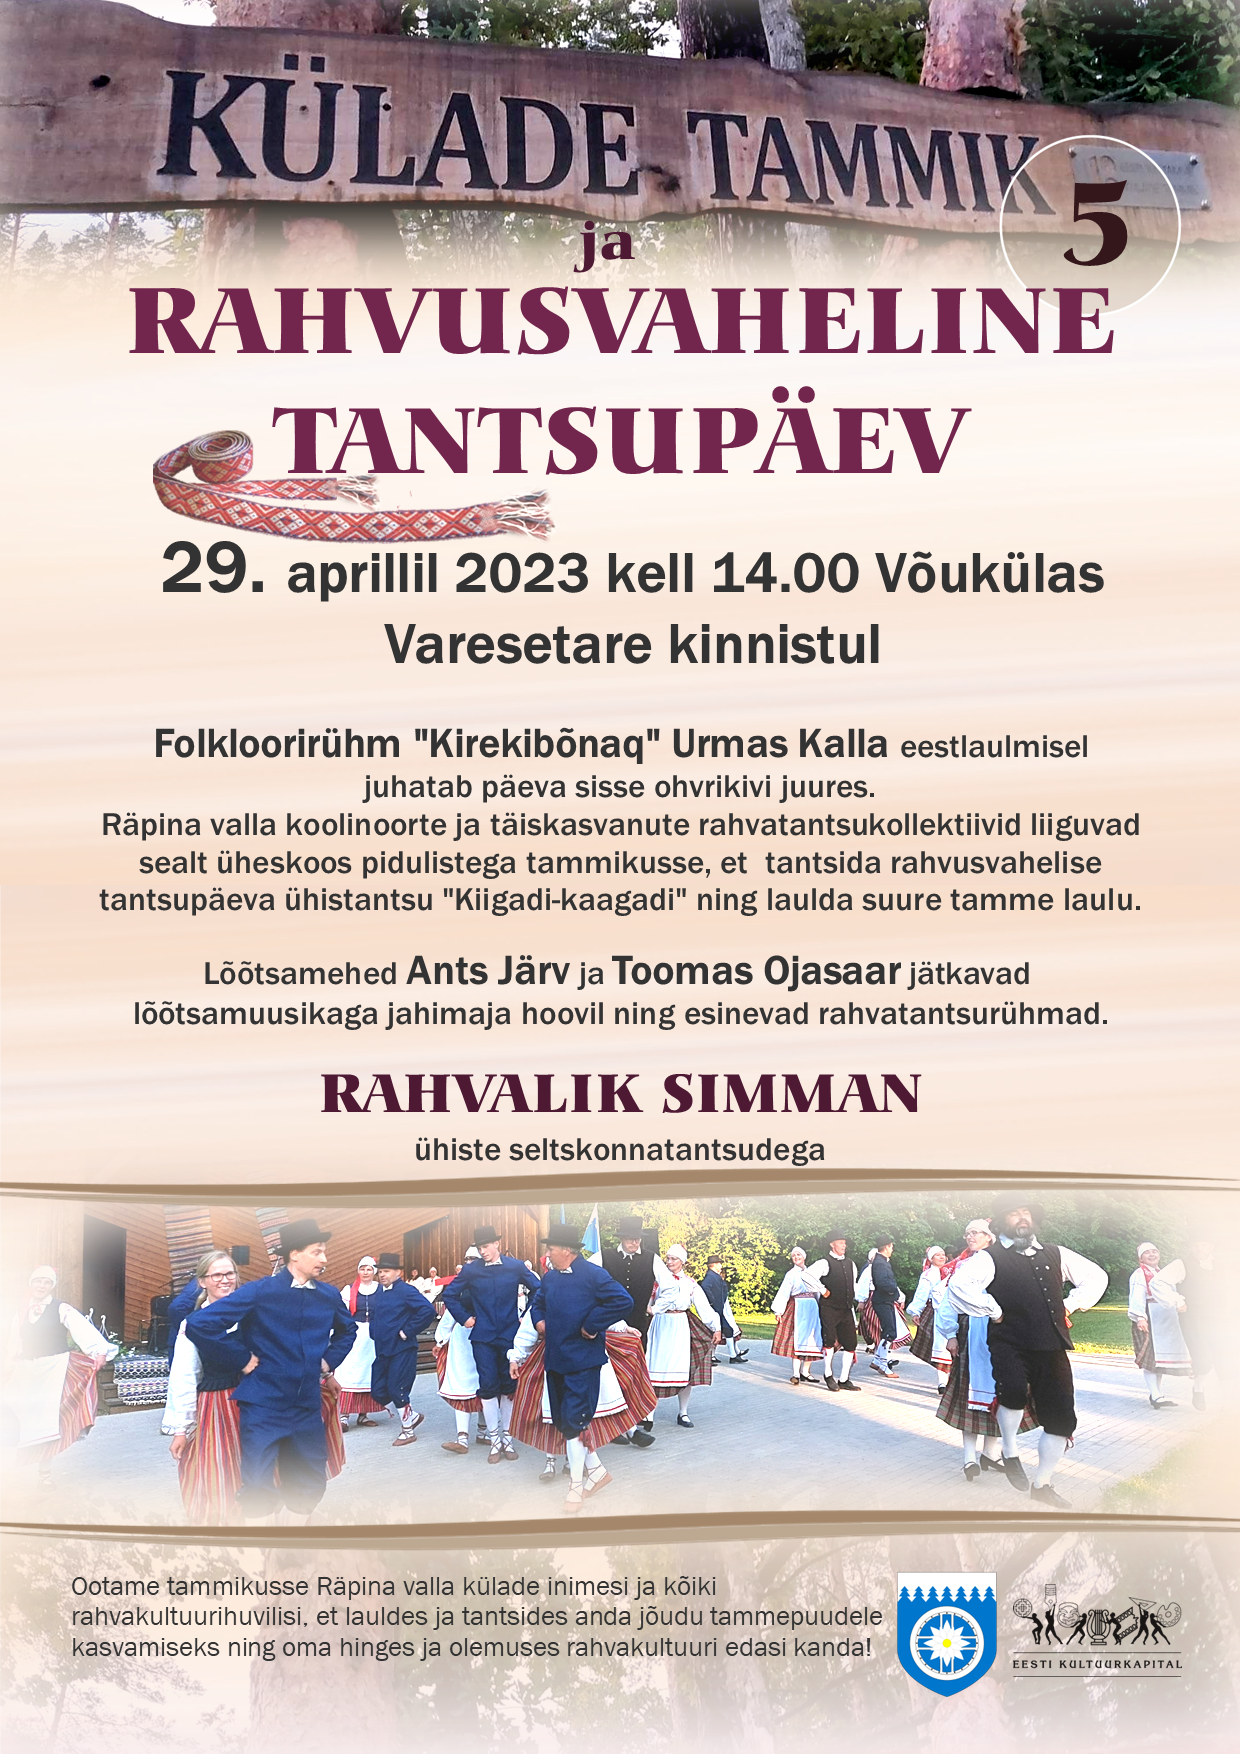 Rahvusvaheline tantsupäev Võukülas Külade tammikus @ Külade tammik Võukülas | Võuküla | Põlva maakond | Eesti